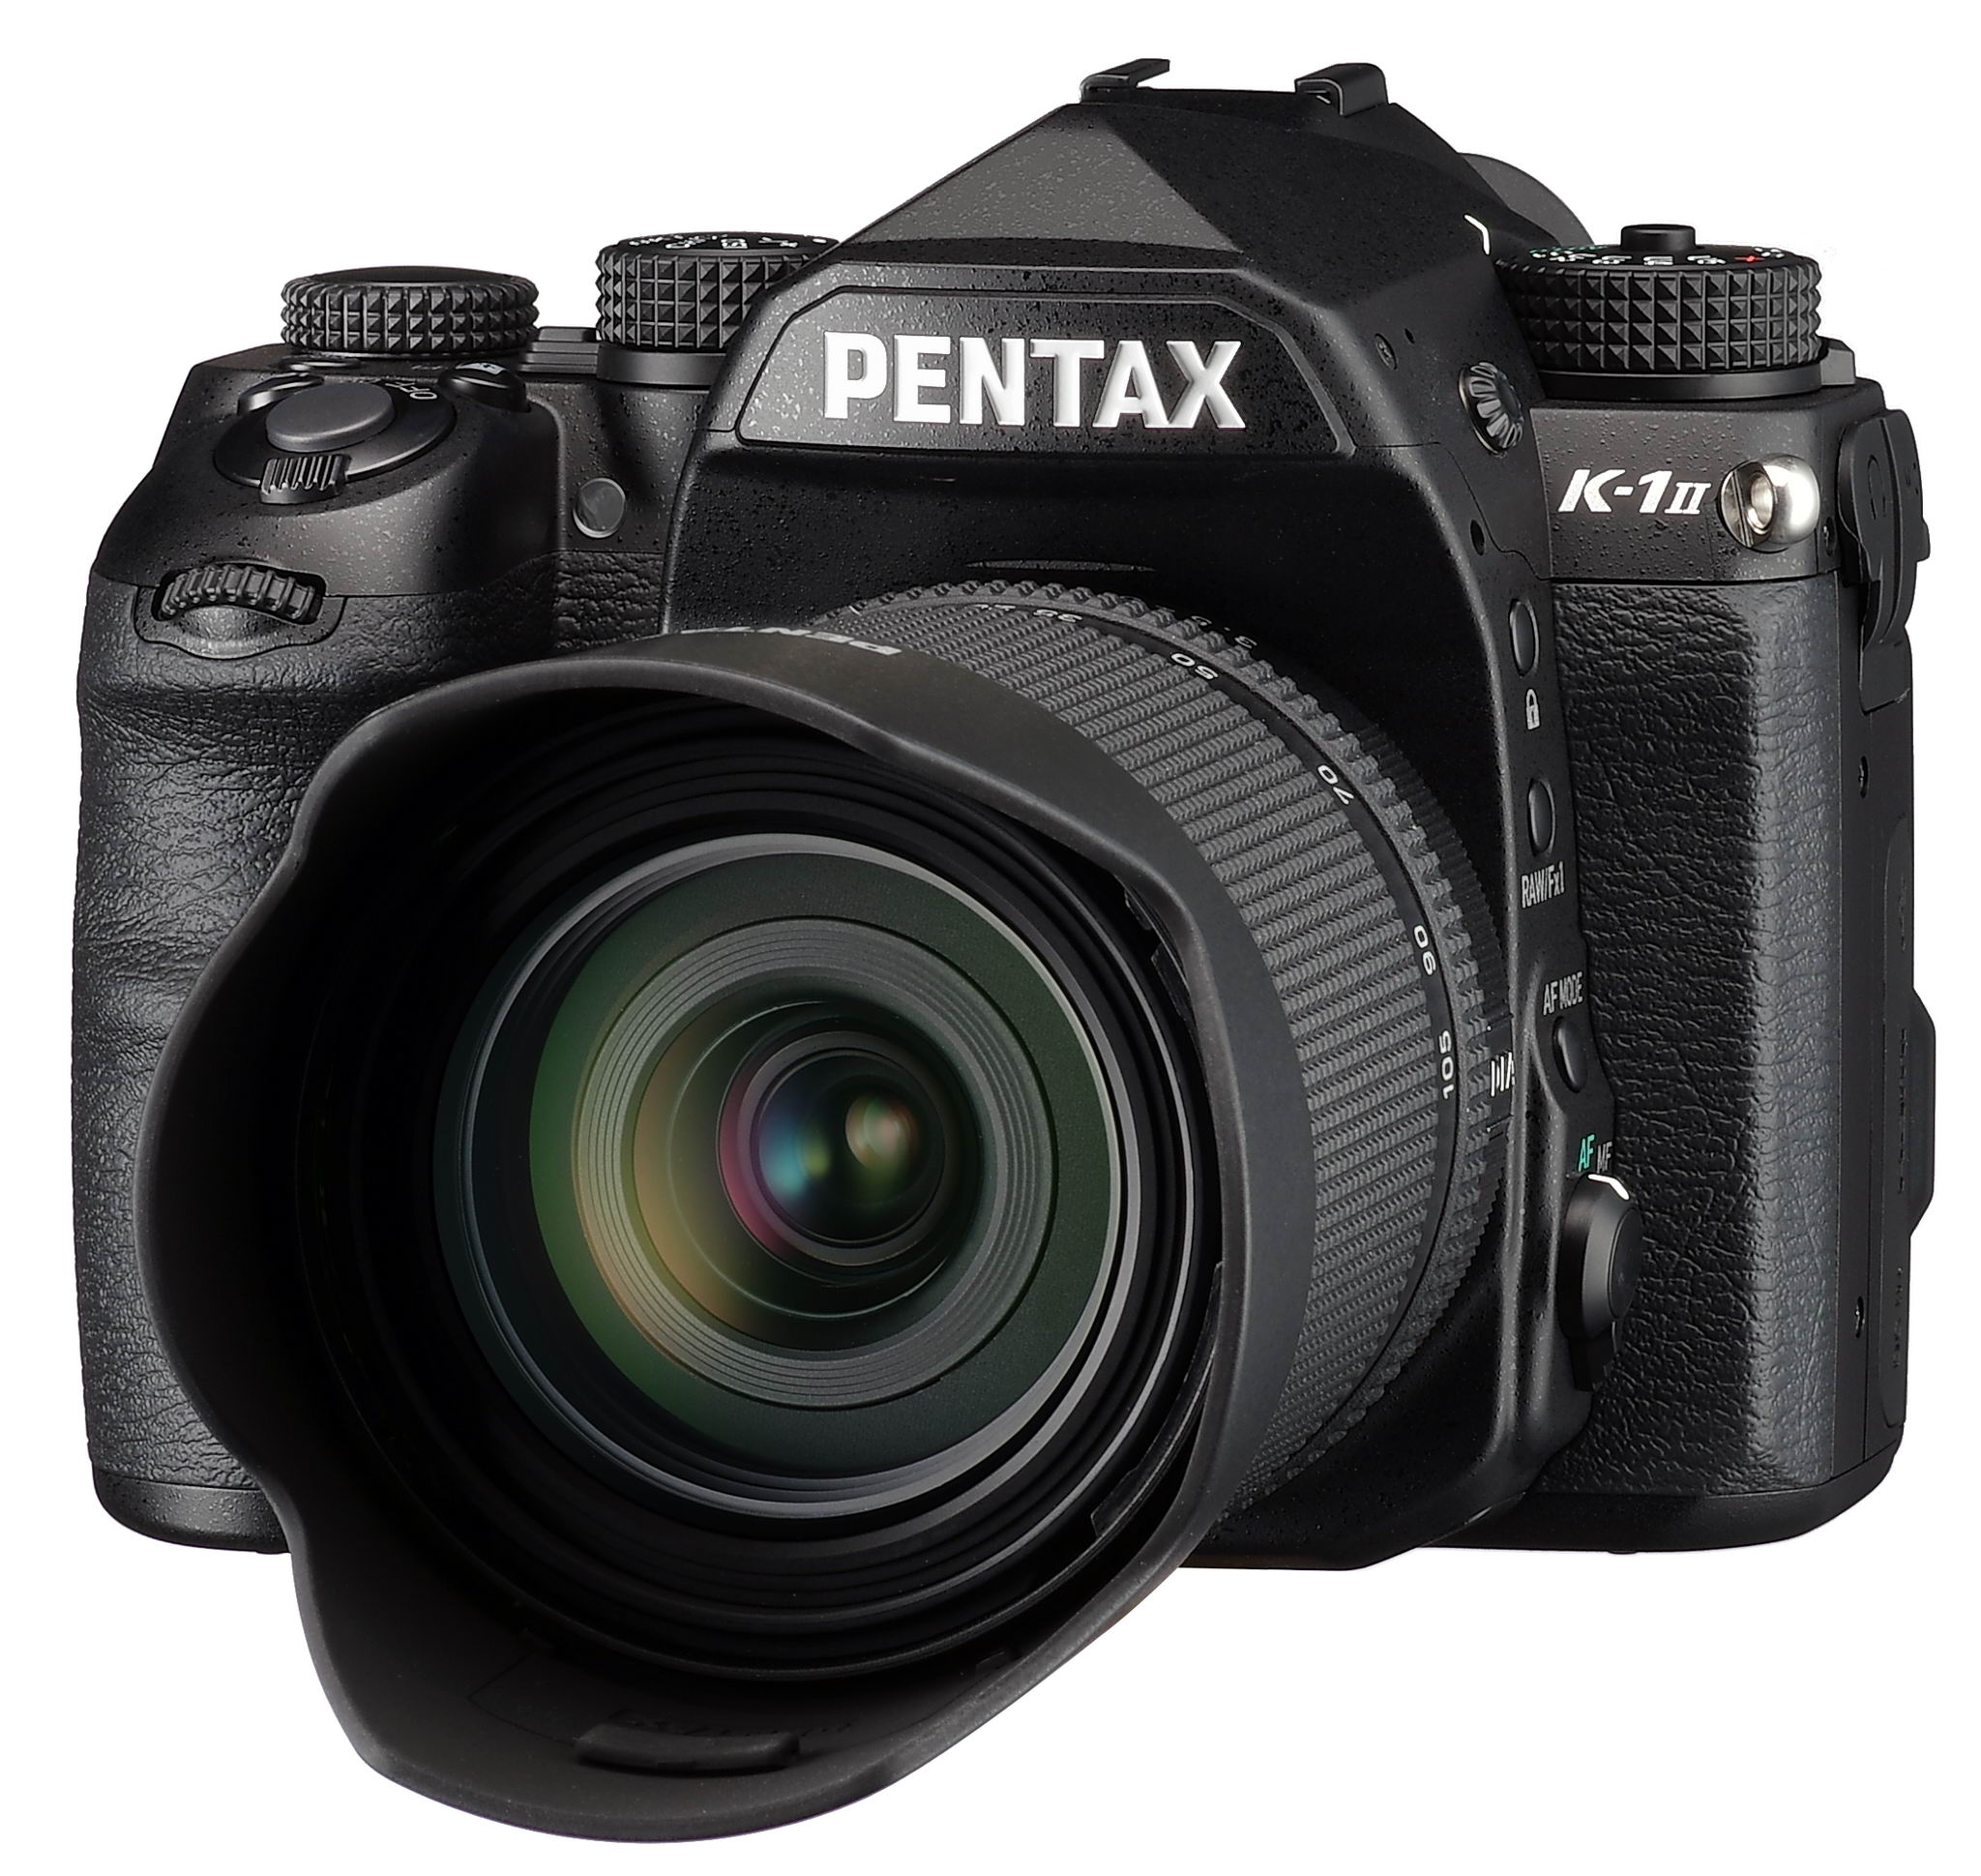 PENTAX K-1 Mark II 35mm full-frame digital SLR camera: The new